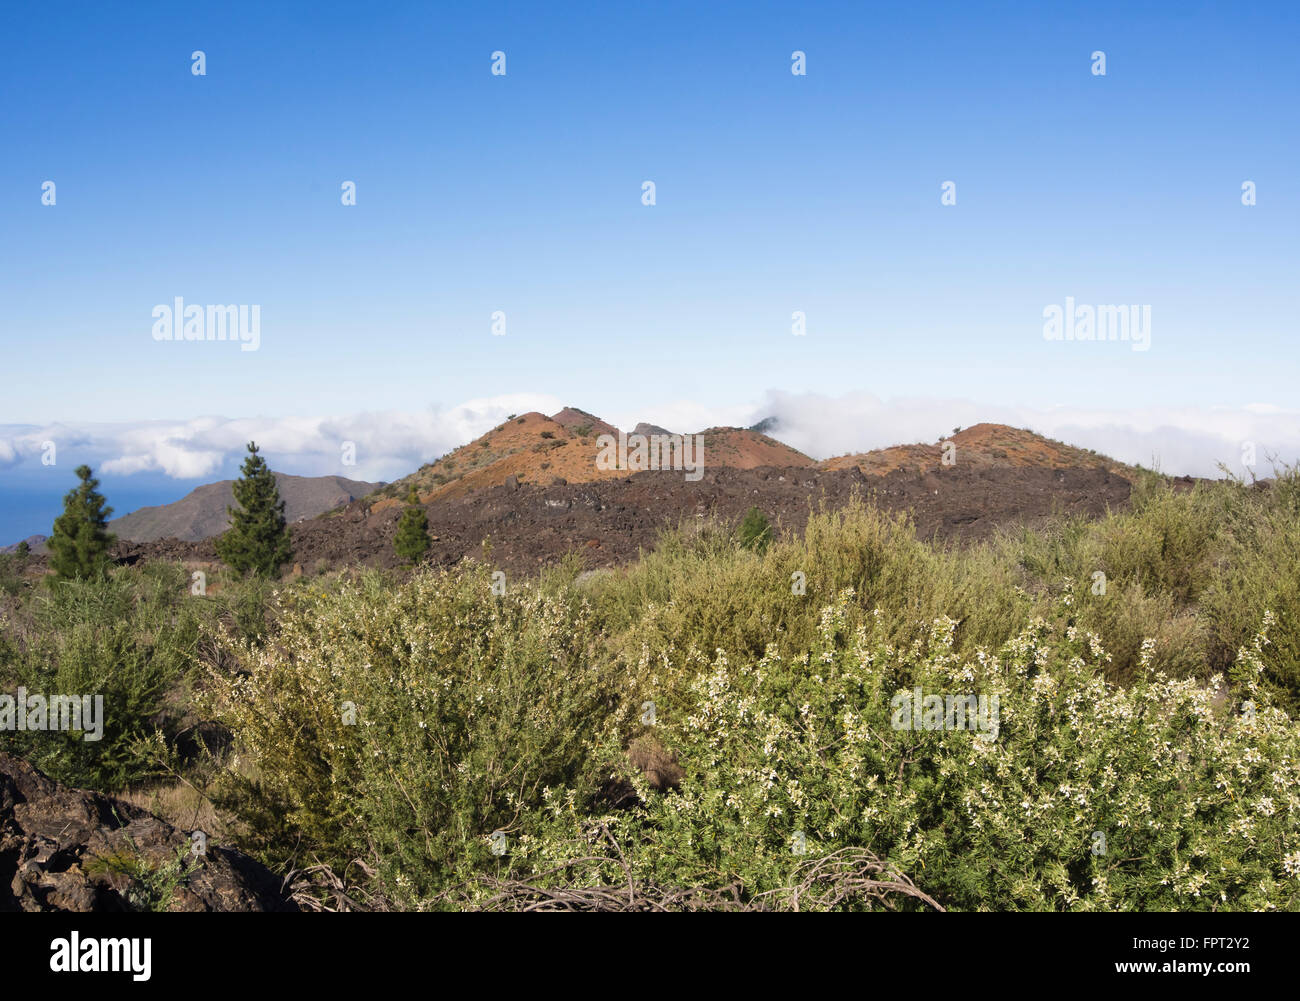 Tagasaste oder Baum Luzern und Berg Bilma Vulkan vulkanische Landschaft im westlichen Teneriffa-Kanarische Inseln-Spanien Stockfoto